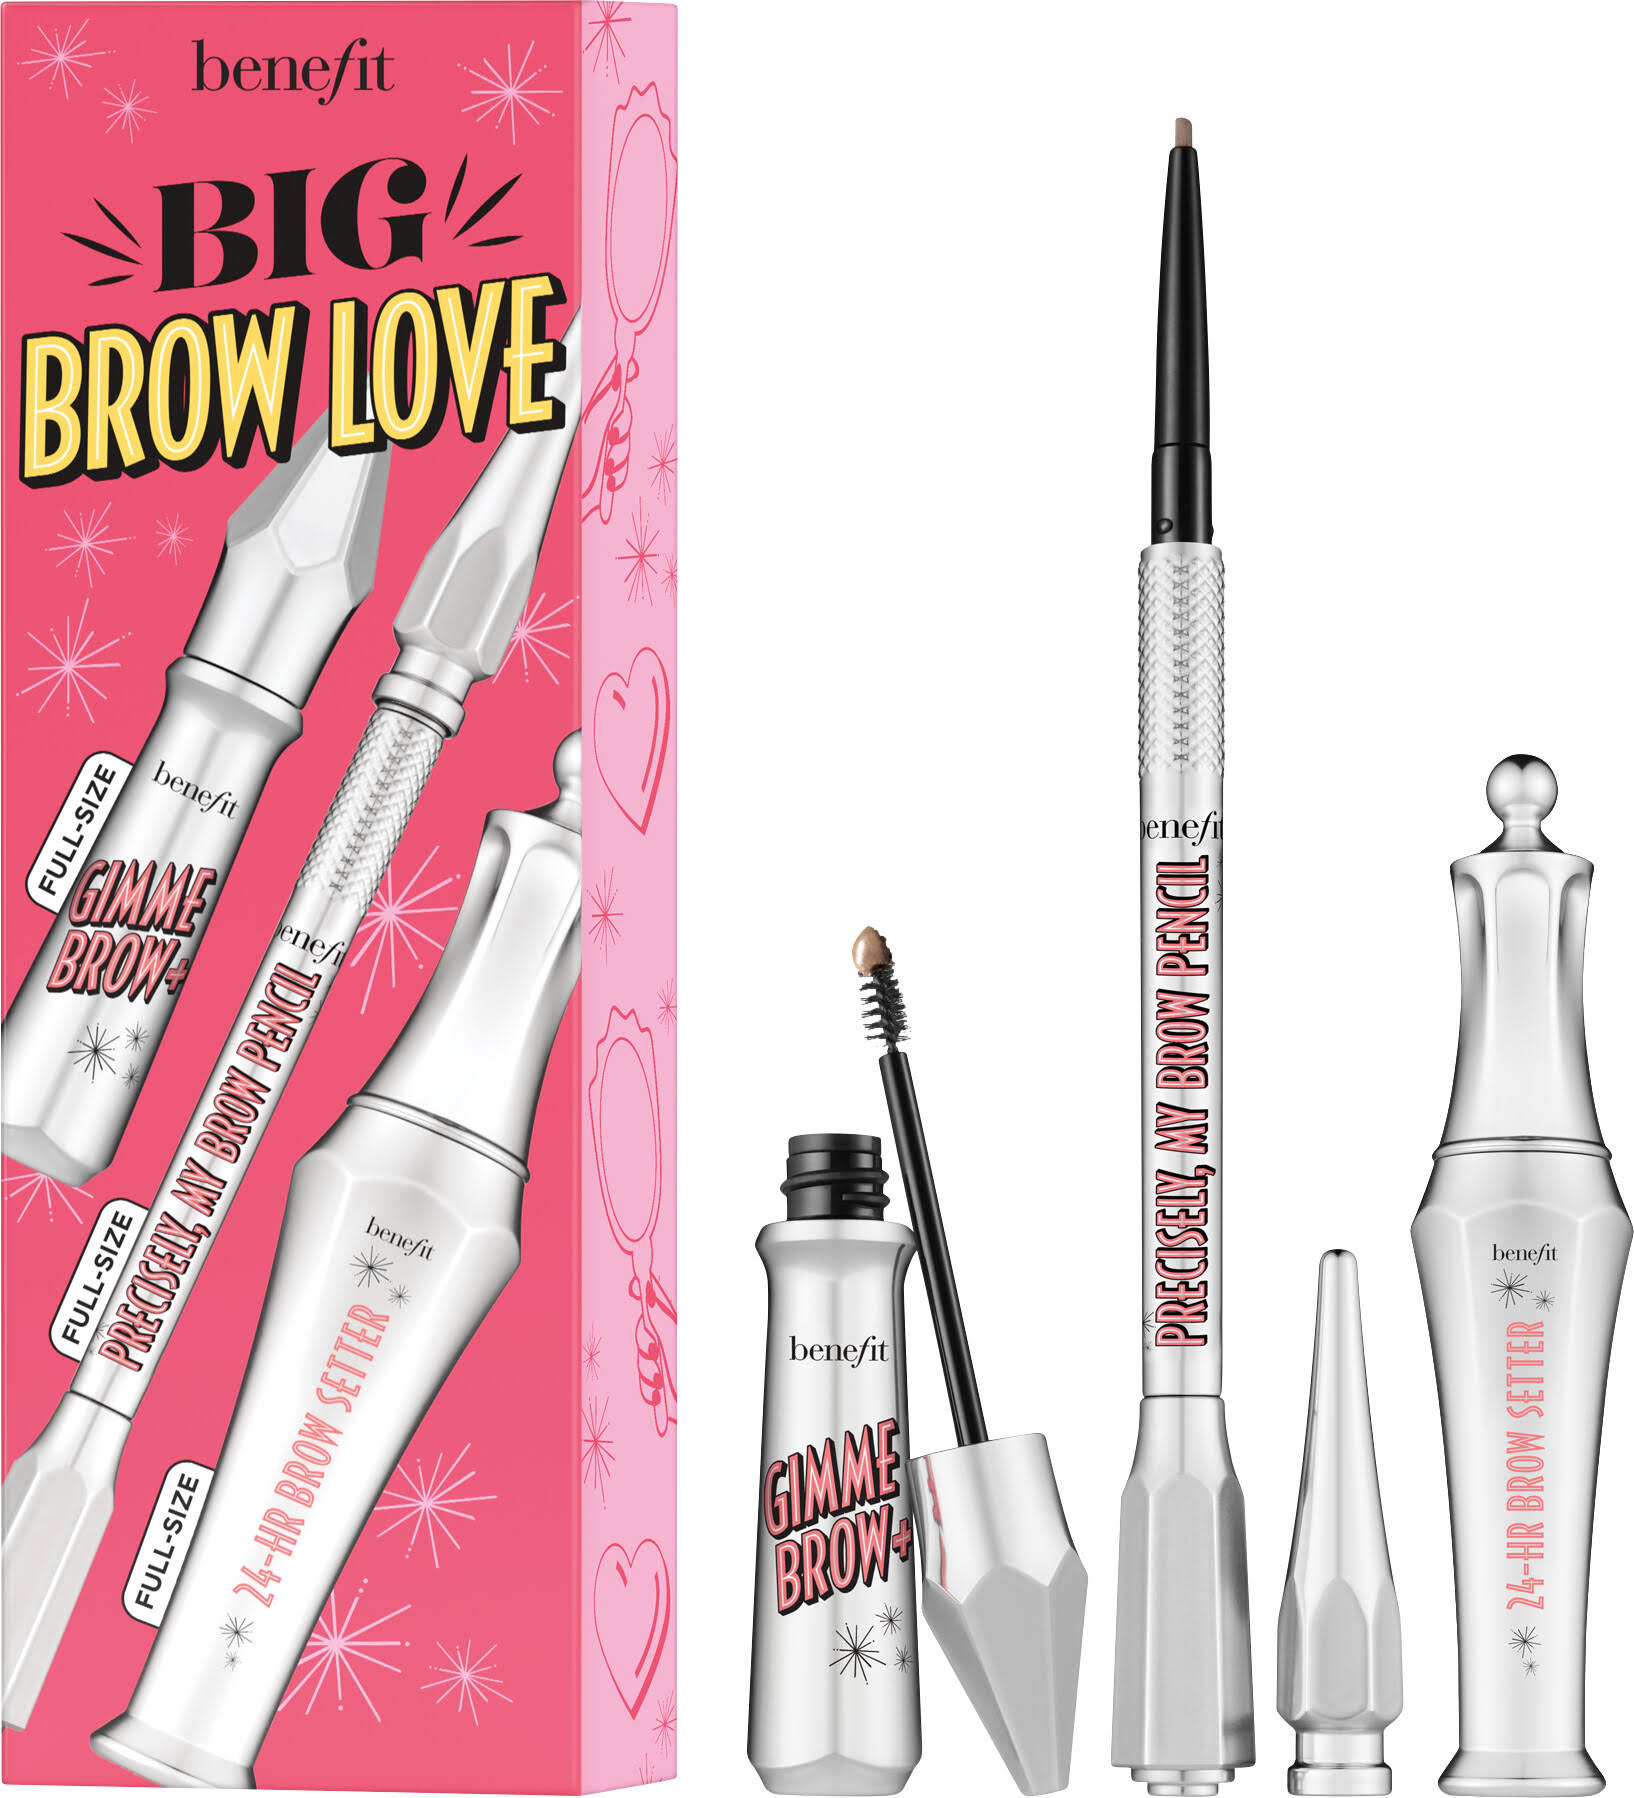 Benefit Big Brow Love Eyebrow Pencil & Gel Trio Set